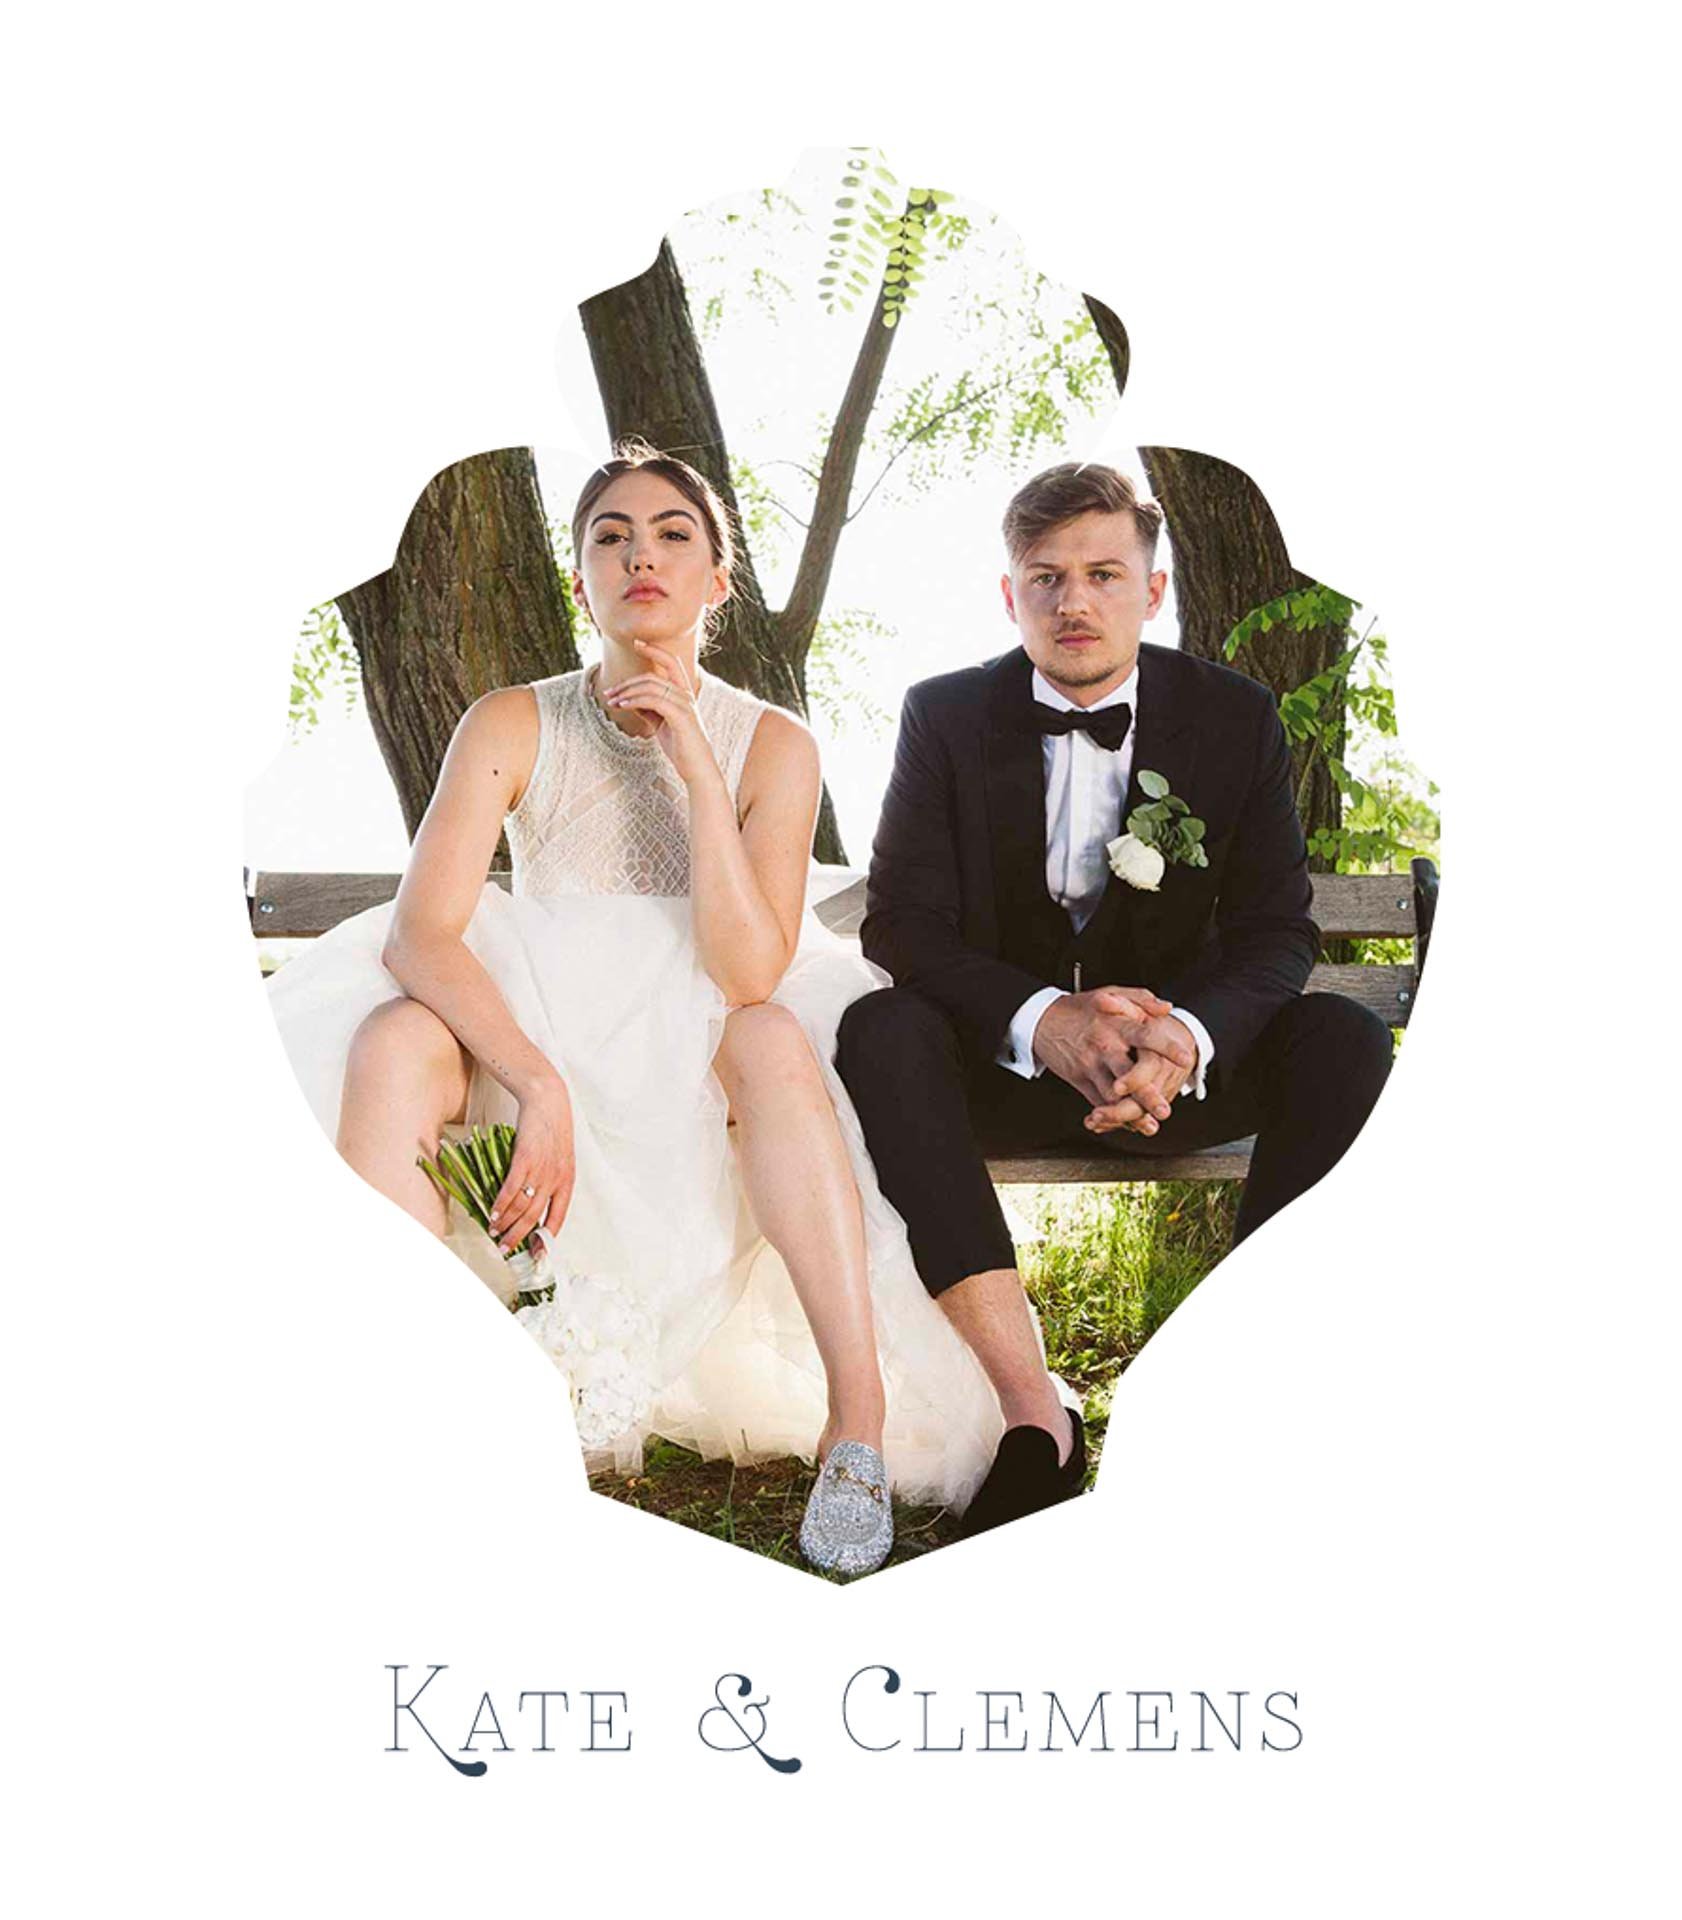 Kate&Clemens_MitFedern&Posaunen_Hochzeitsfotografie_Weddingphotography01.jpg